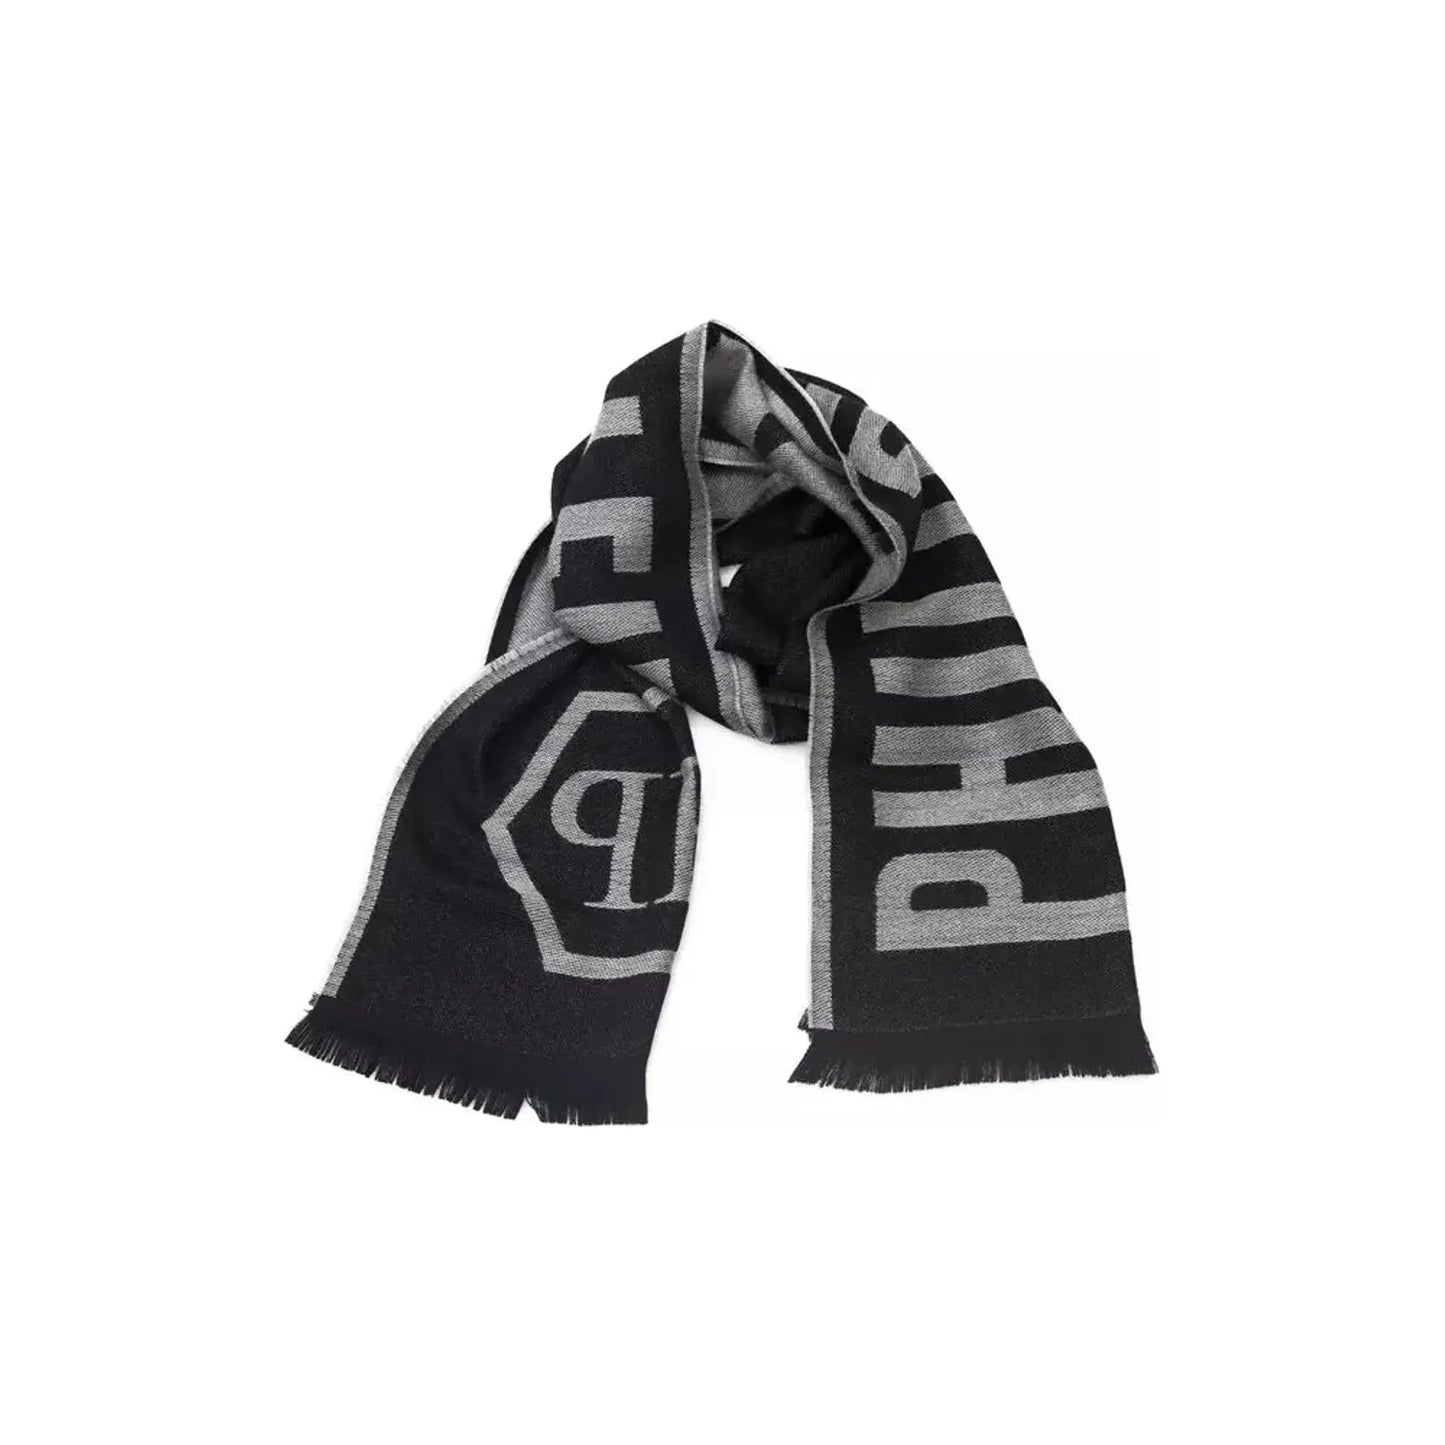 Philipp Plein Elegant Gray Fringed Wool Blend Scarf Wool Wrap Shawl Scarf grey-wool-scarf-2 product-22242-1644497664-24-5eab9dac-f7d.webp